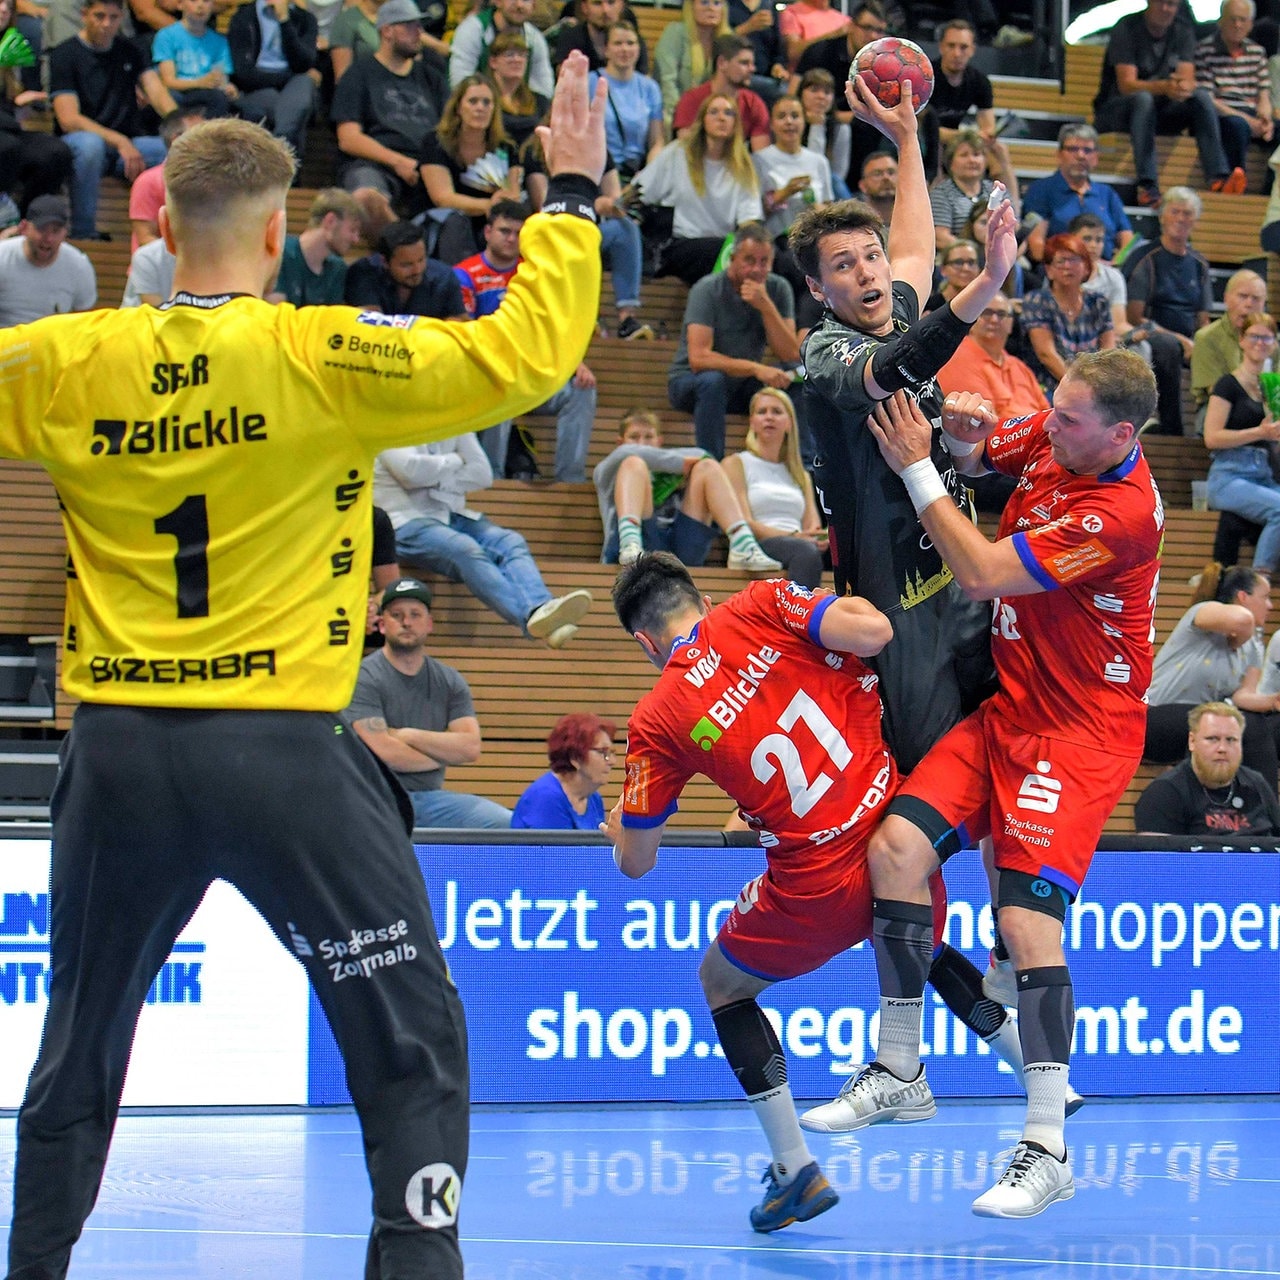 Handball Elbflorenz crasht Balinger Meister-Feier MDR.DE